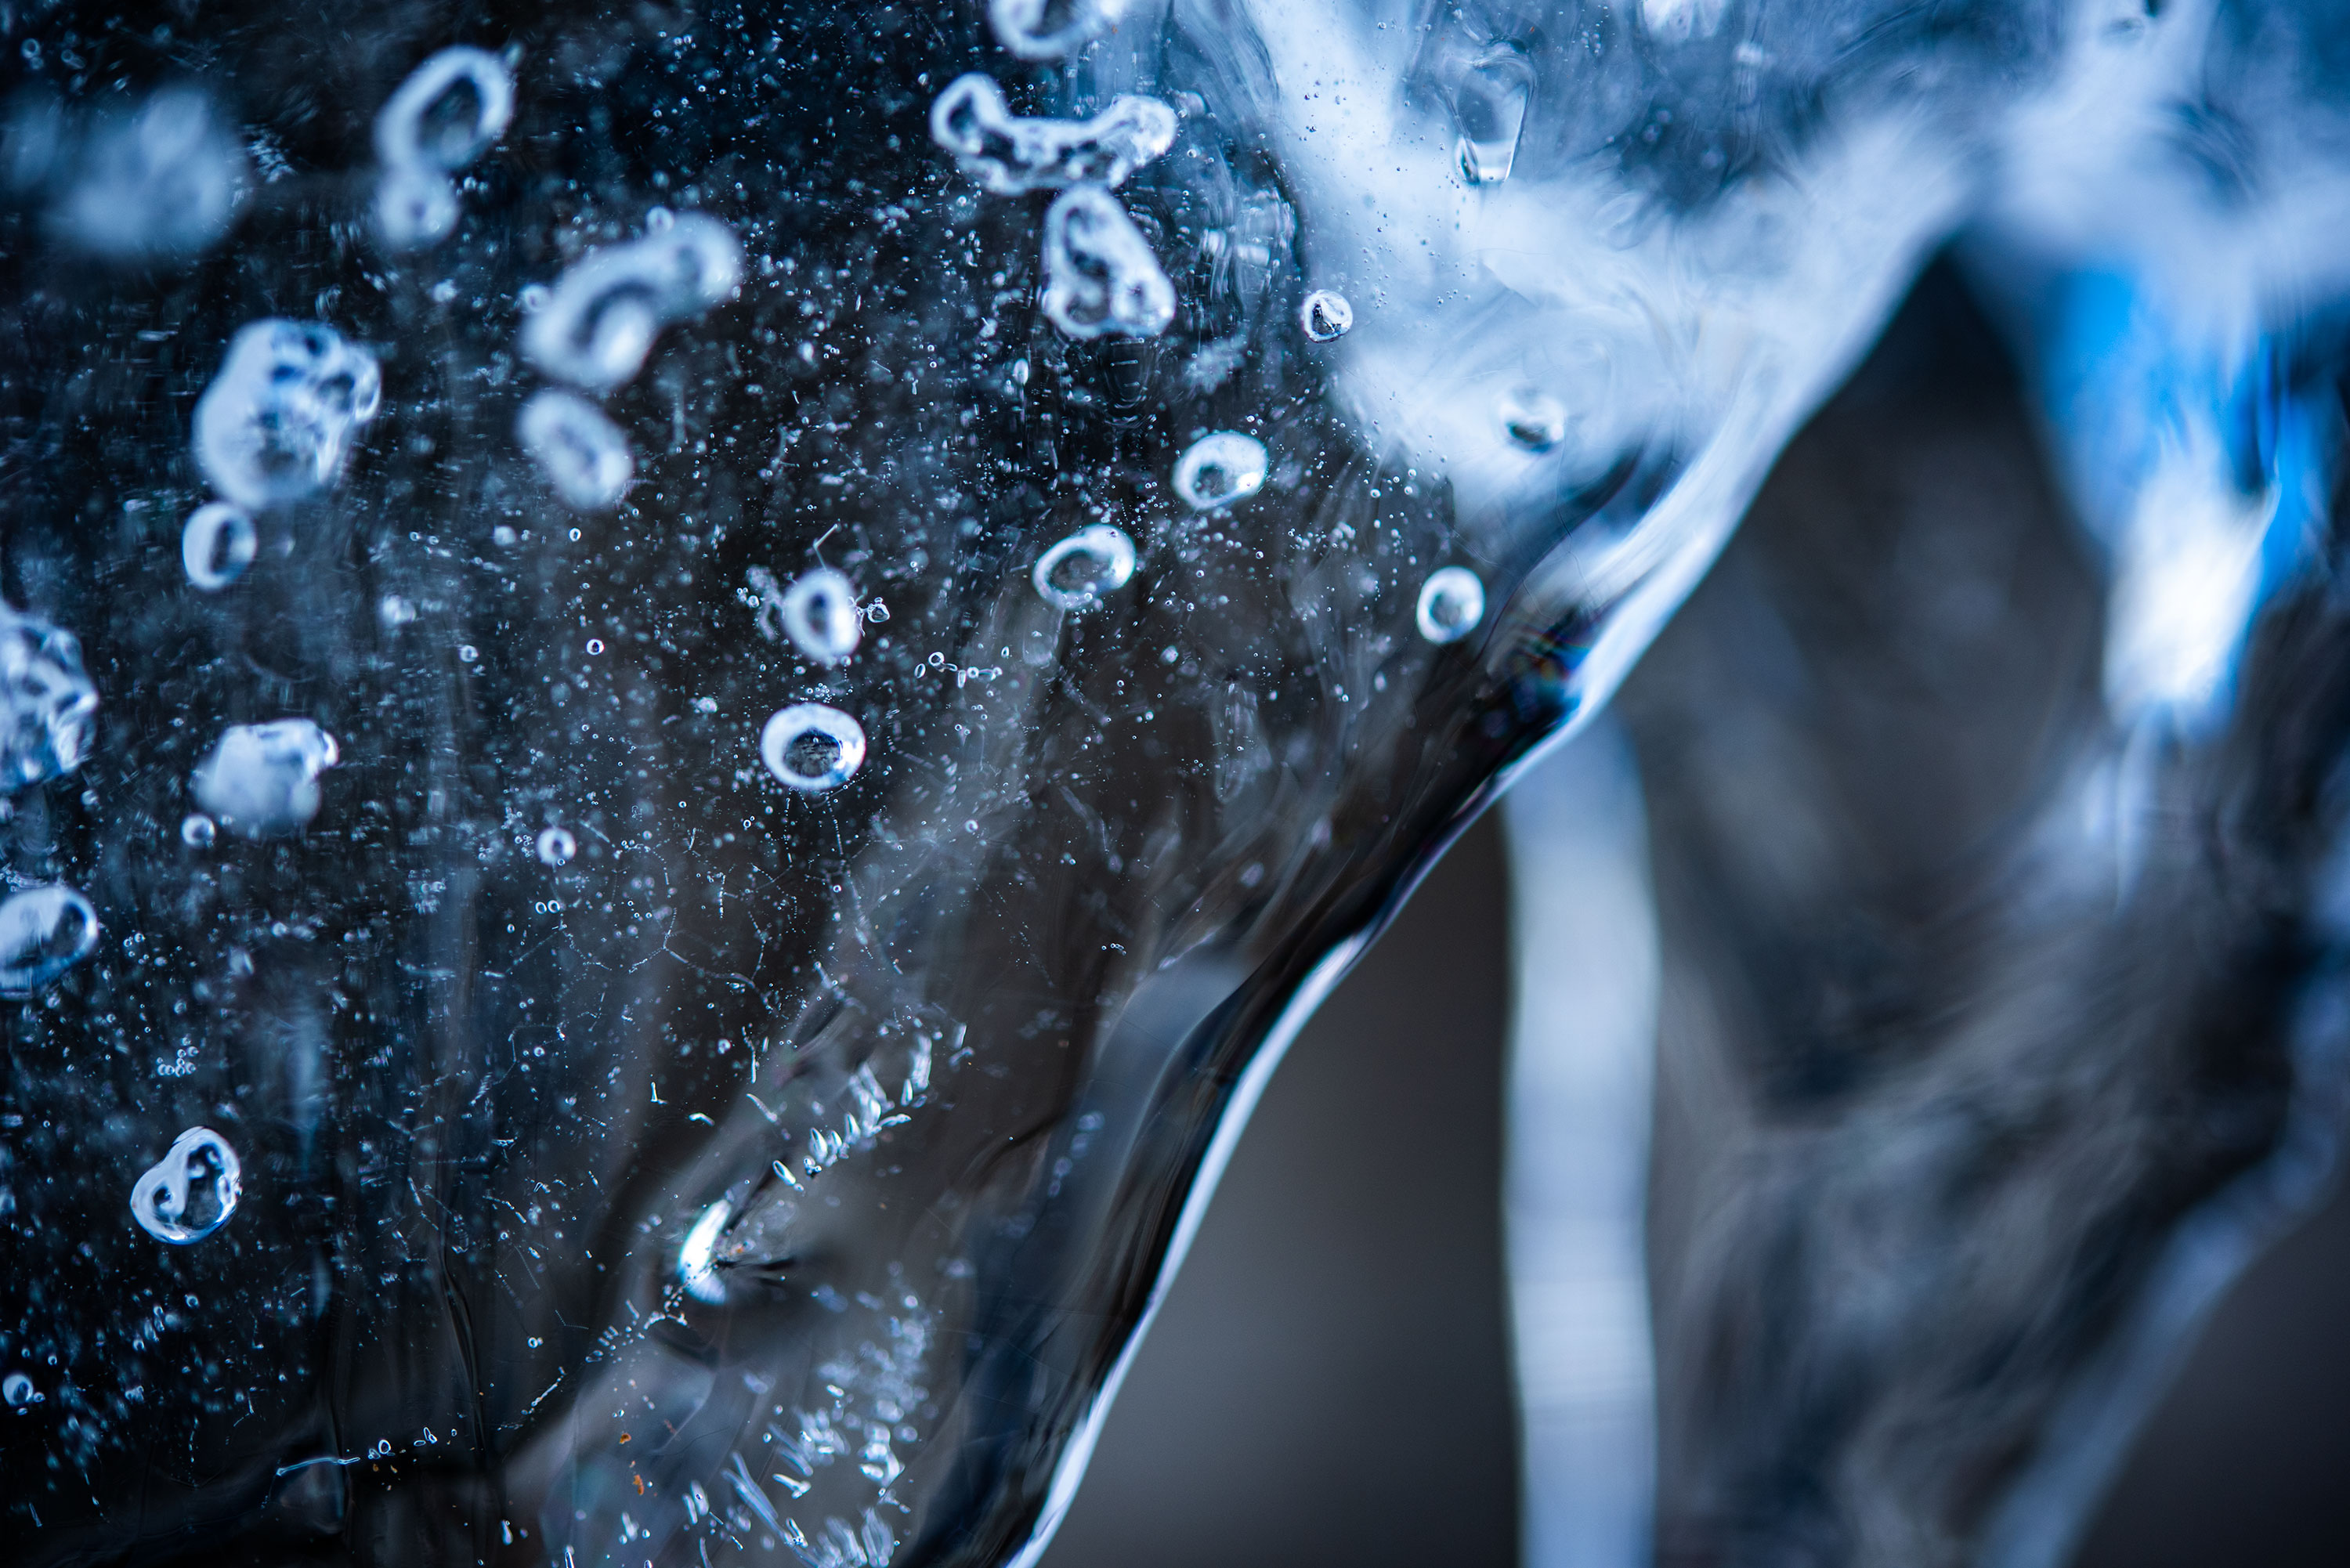 Frozen water macro photography.